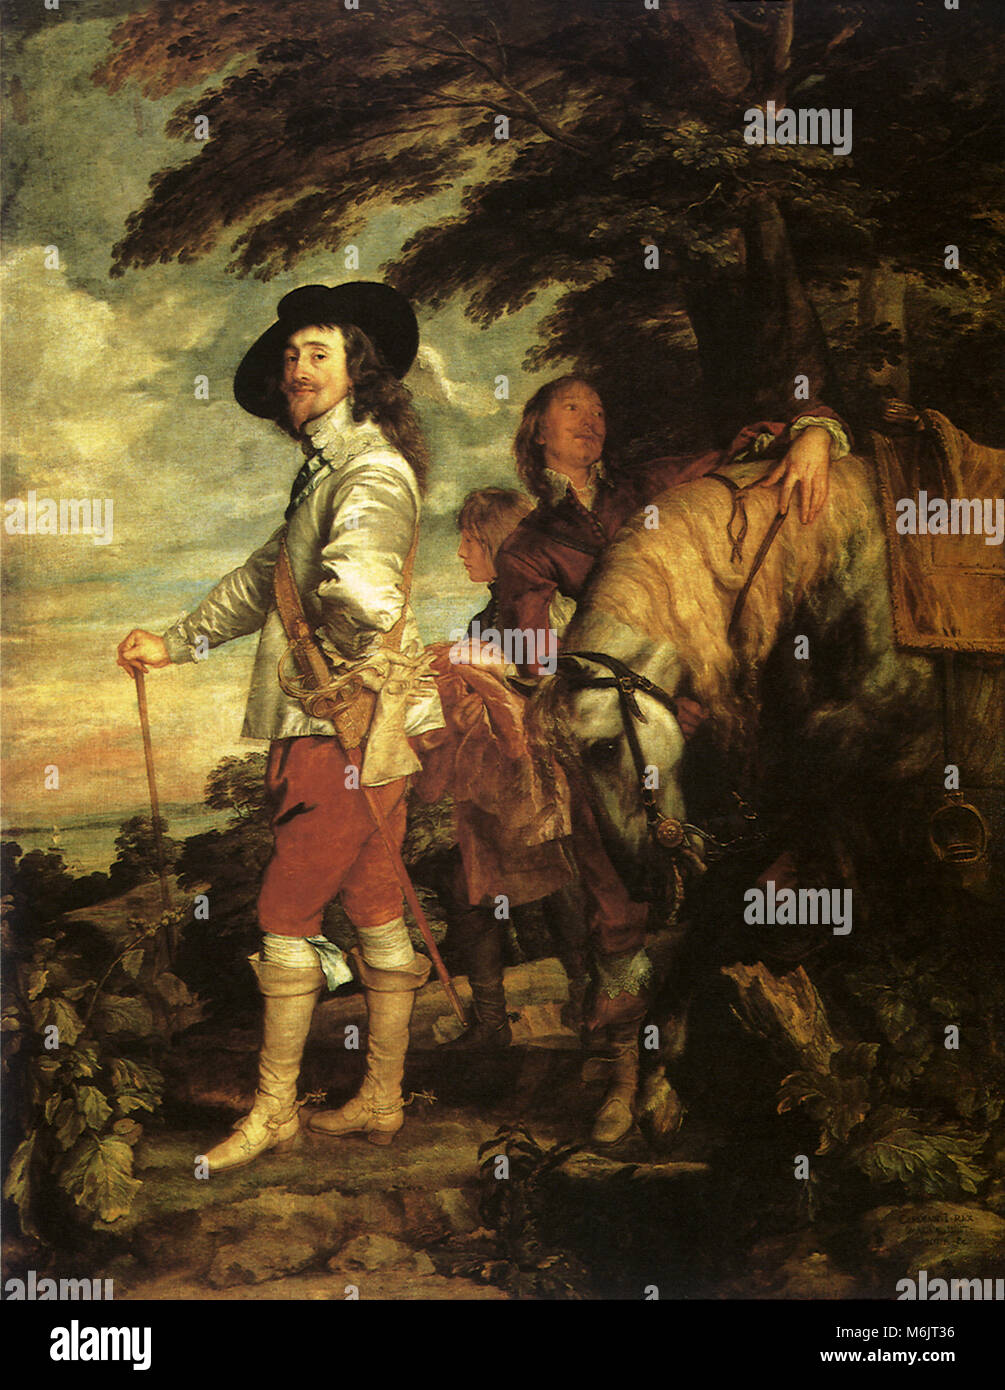 Carlos I, Rey de Inglaterra, la caza de 1638, Anthony van Dyck, 1638. Foto de stock